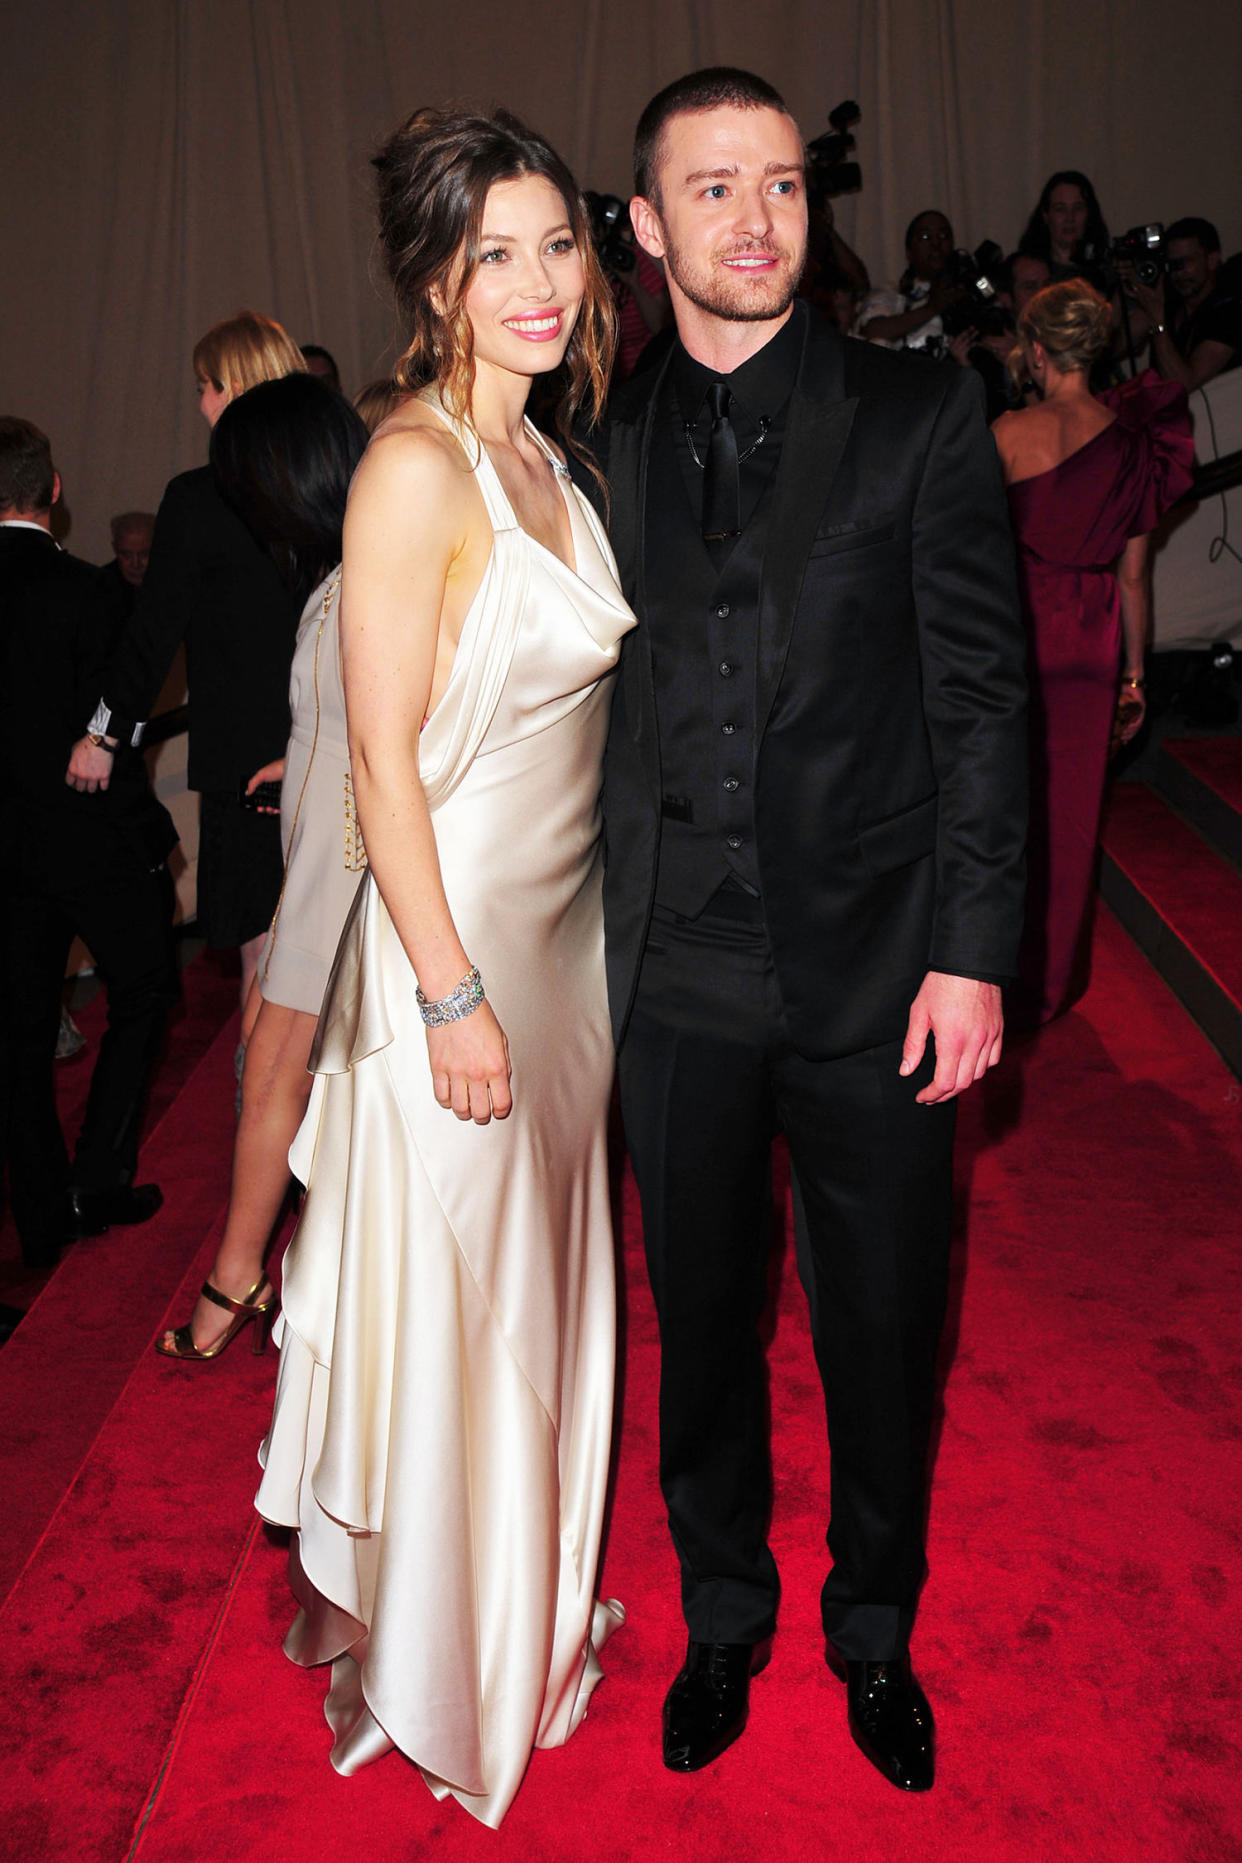 Jessica Biel and Justin Timberlake at 2010 Met Gala (Patrick McMullan / Getty Images)